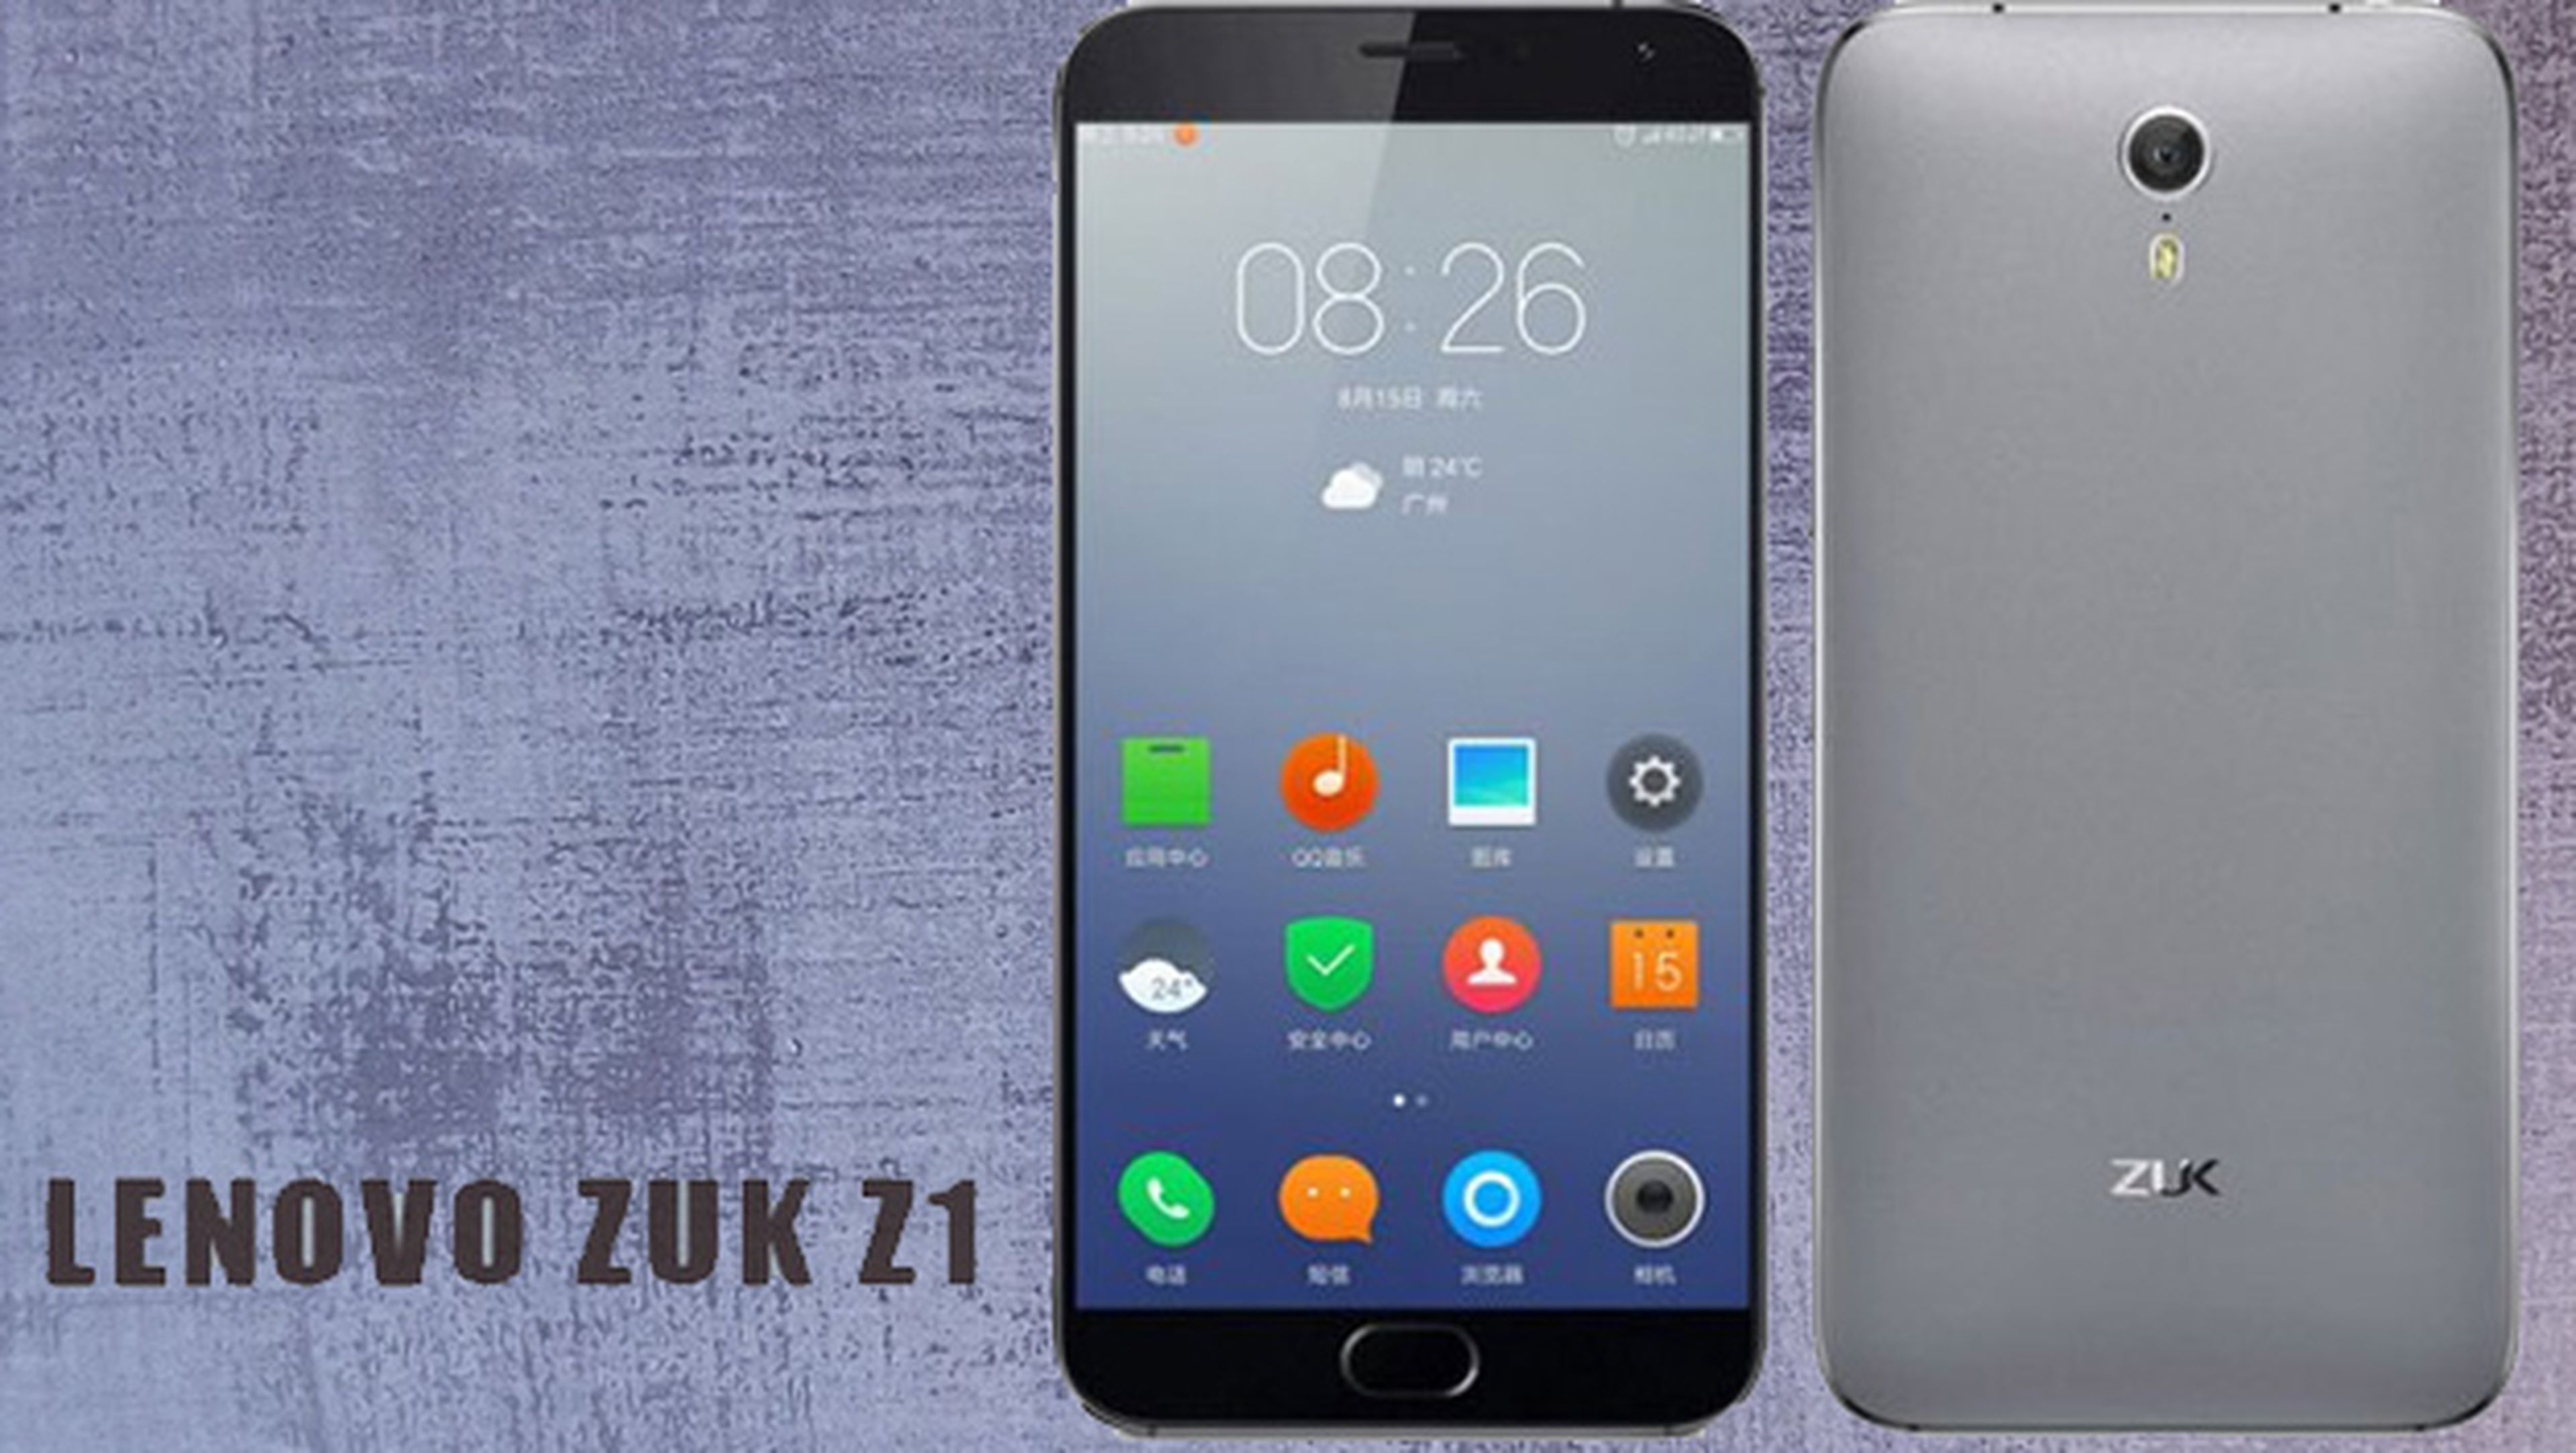 Zuk Z1, un gama alta a buen precio cortesía de Lenovo